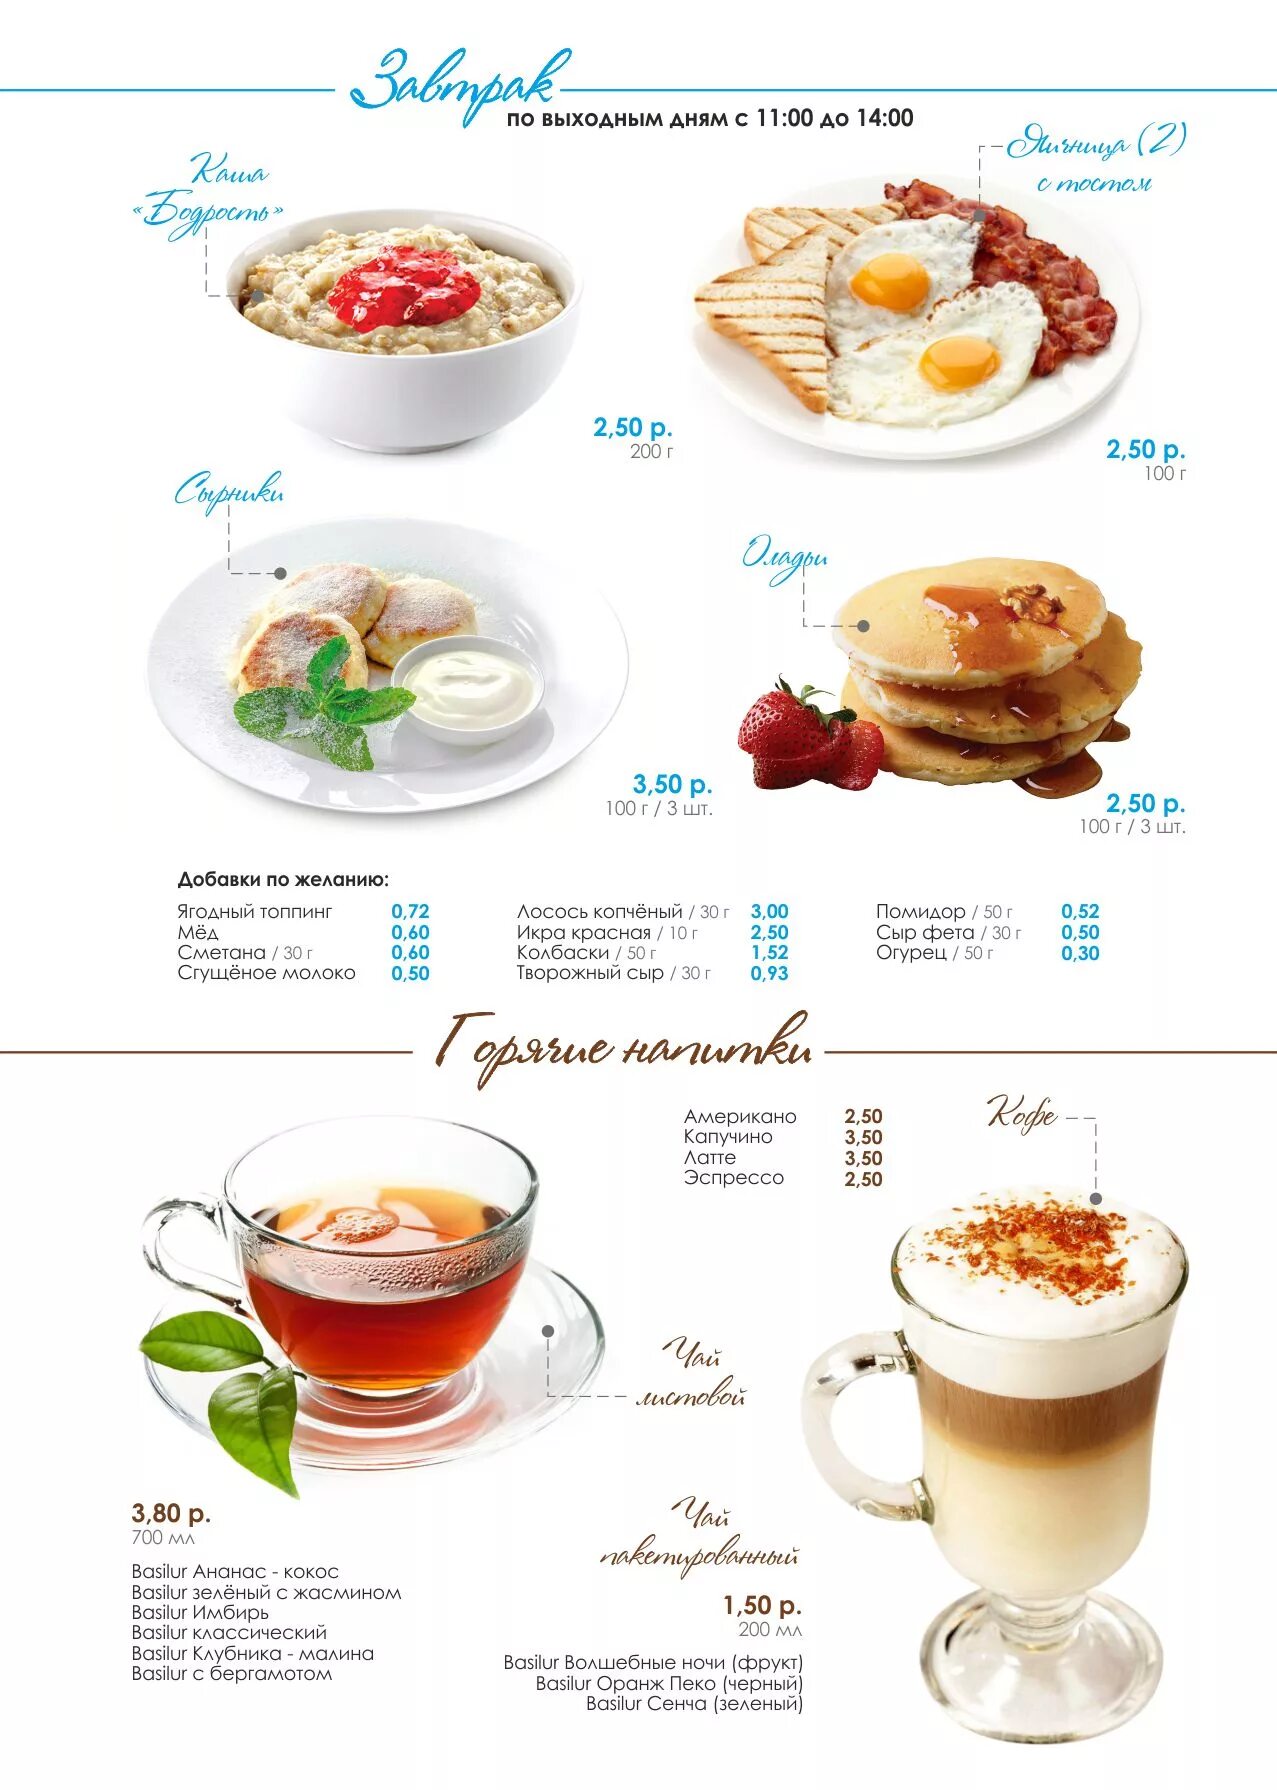 Меню завтраков. Завтраки в кафе меню. Завтраки в кофейне меню. Завтрак в отеле меню. Министерство завтраков нижний меню